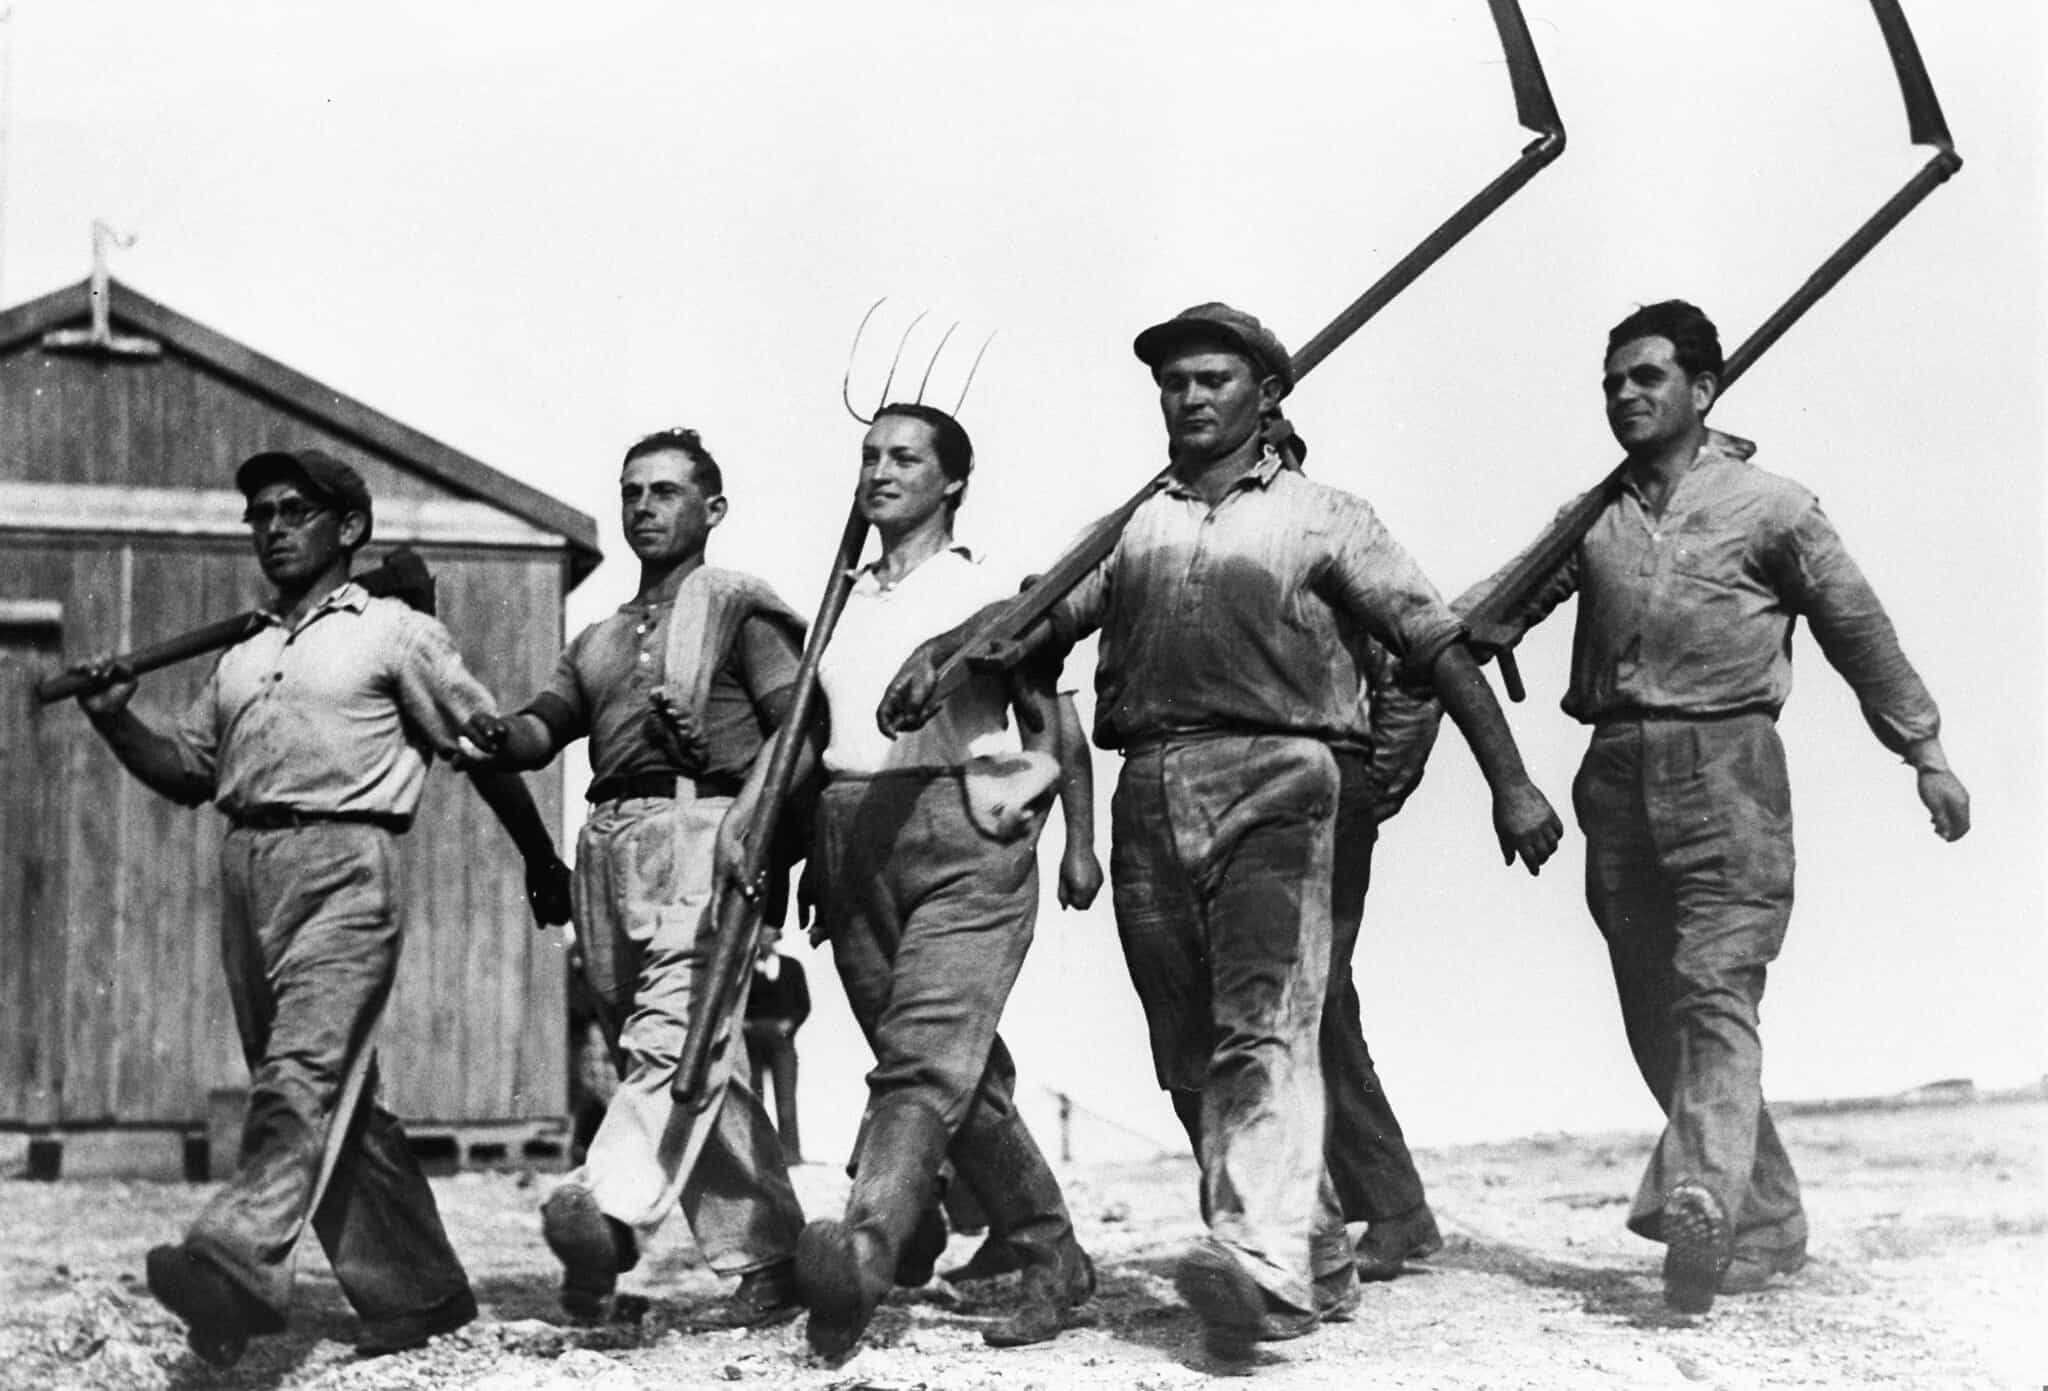 הסטרטאפיסטים הראשונים? חלוצים בעמק חפר, ב-1935 (צילום: זולטן קלוגר/לע